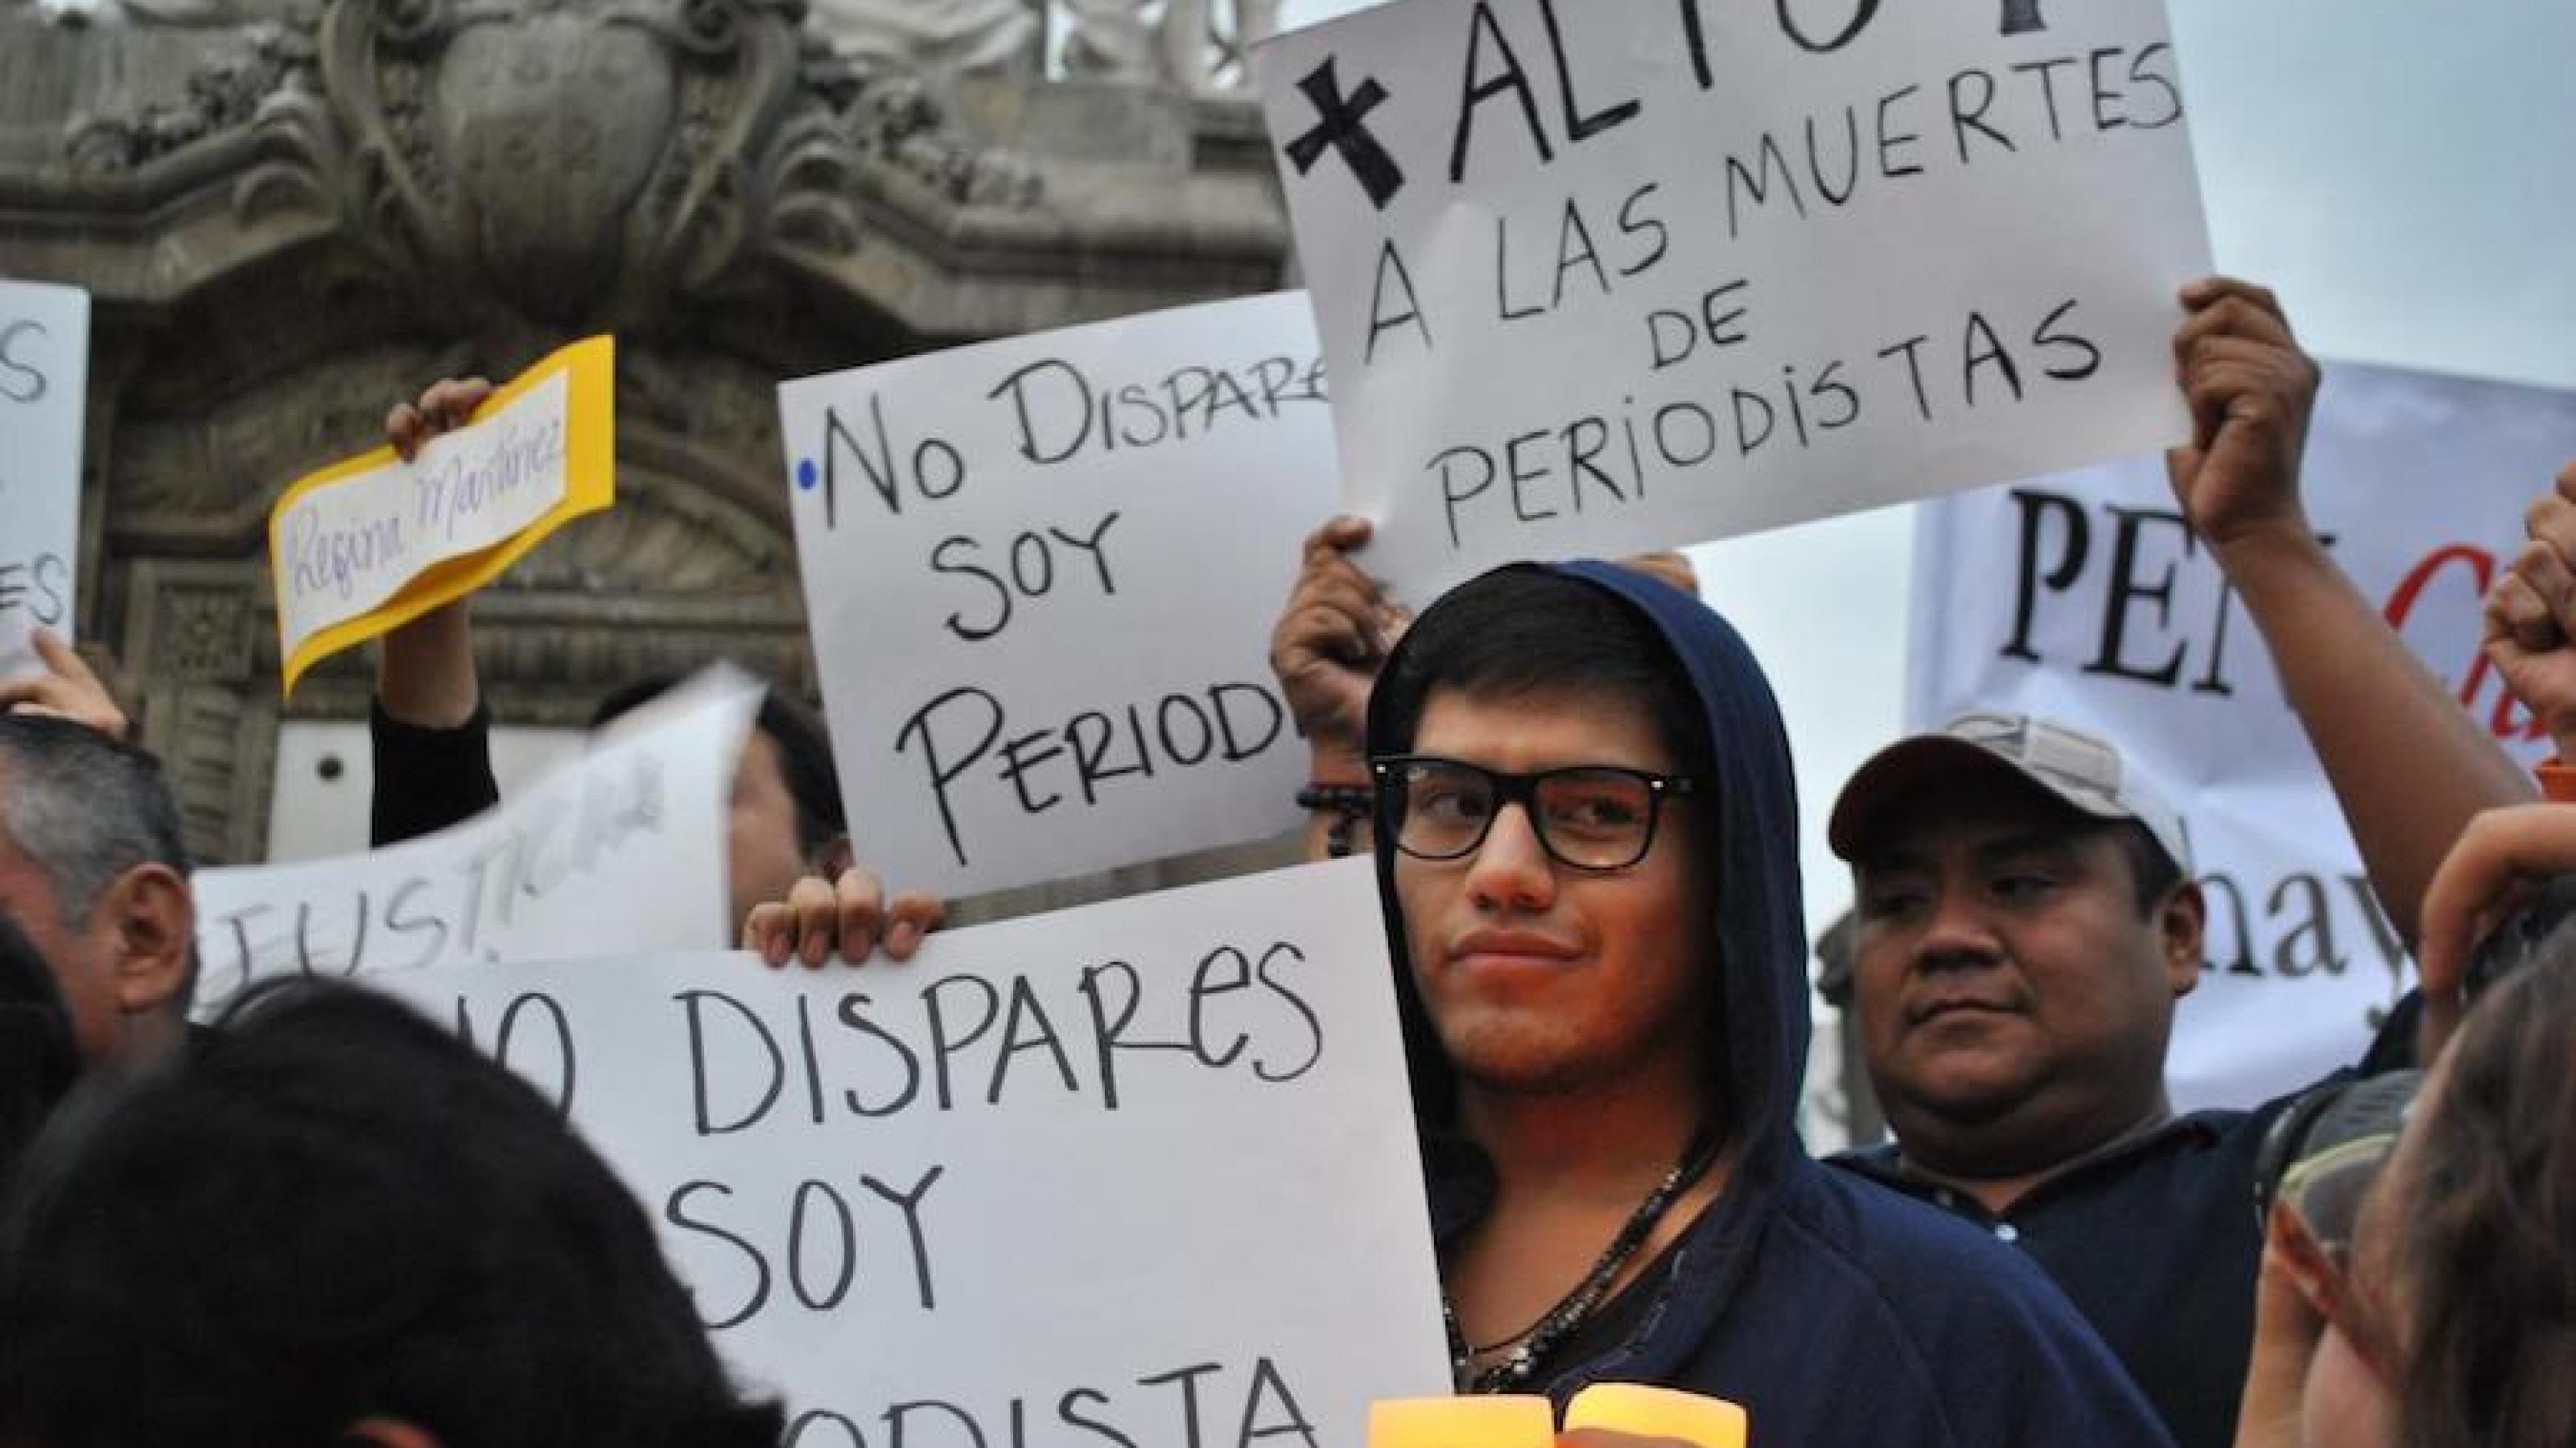 Journalisten halten bei einem Protest in Mexiko-Stadt Plakate hoch, auf denen sie die Gewalt gegen Medienschaffende anprangern.